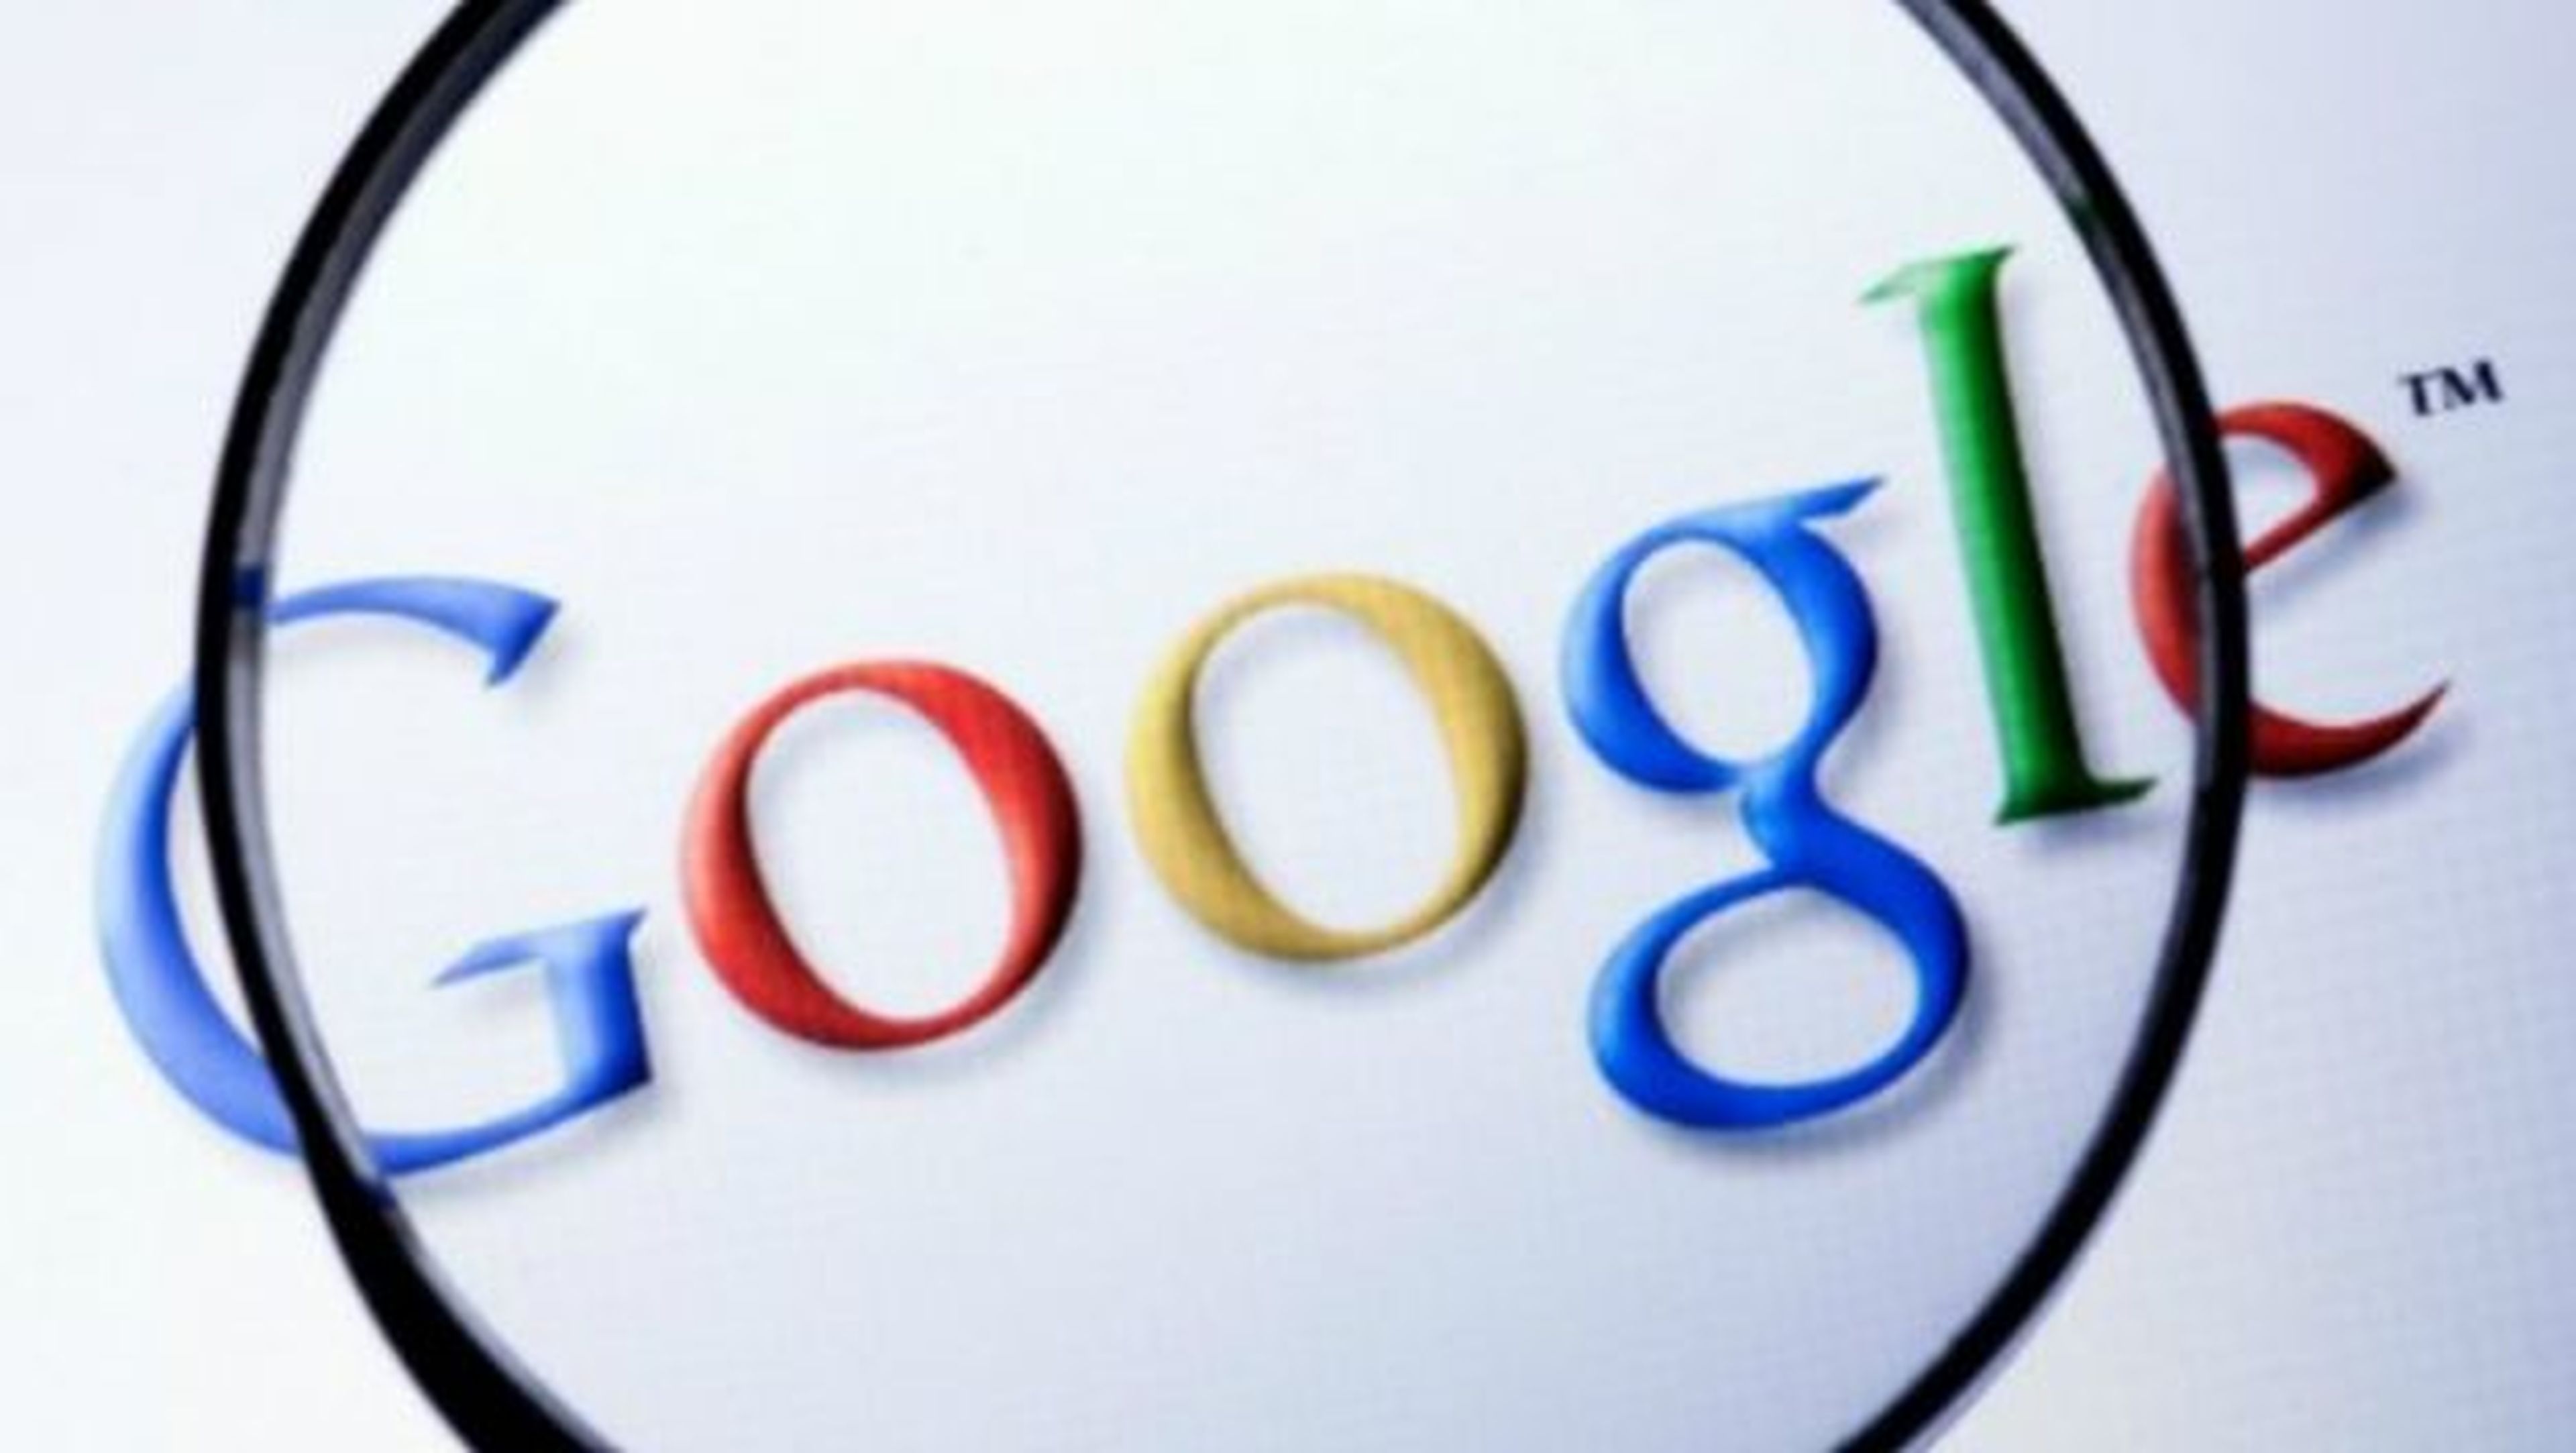 Google cambiará mañana el algoritmo de búsqueda para móviles